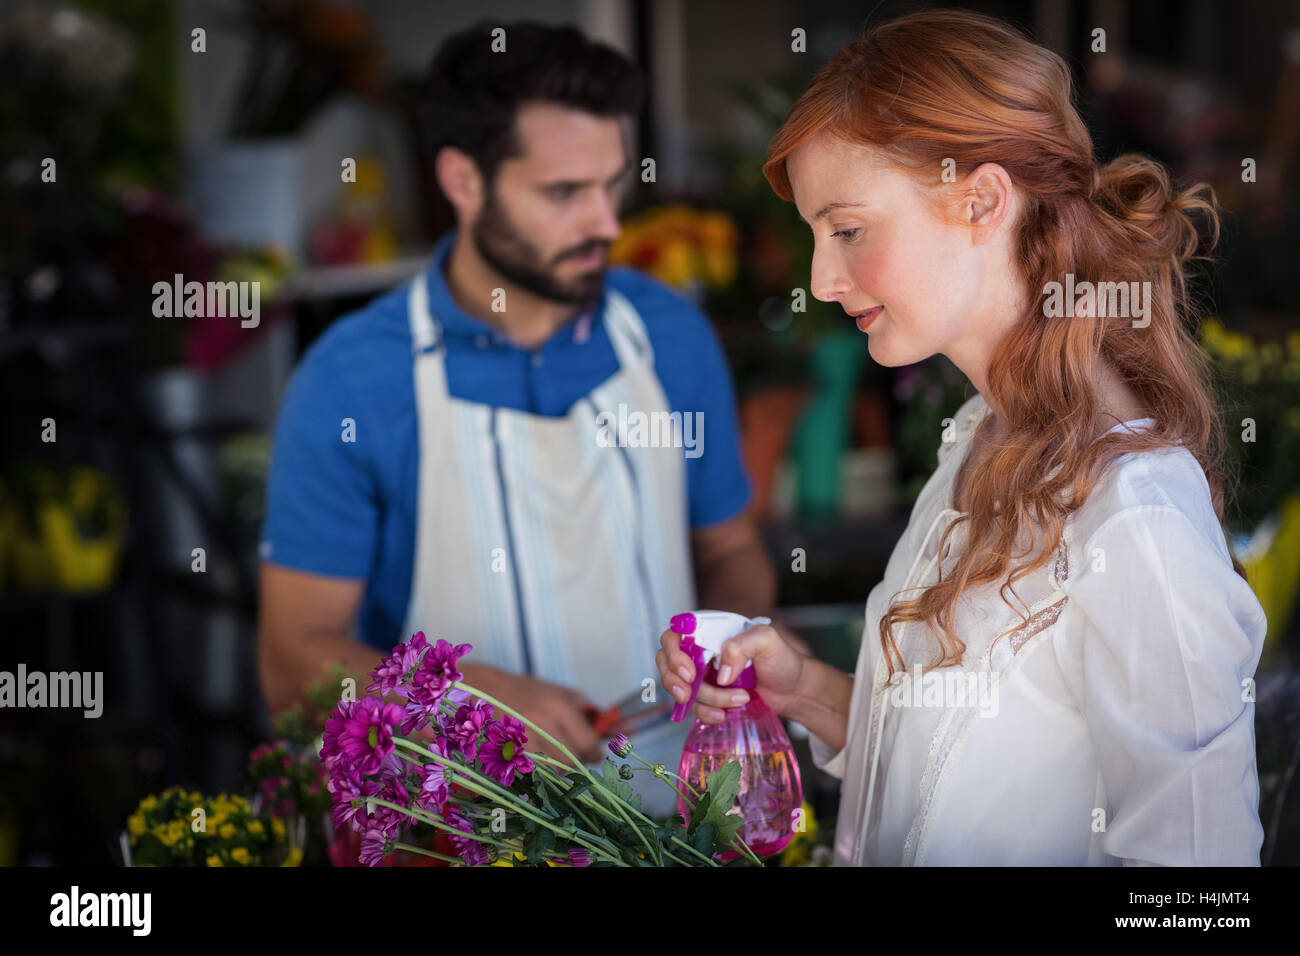 Aufsprühen von Wasser auf Blumenstrauß während Vorbereitung Blumenstrauß Mann Frau Stockfoto